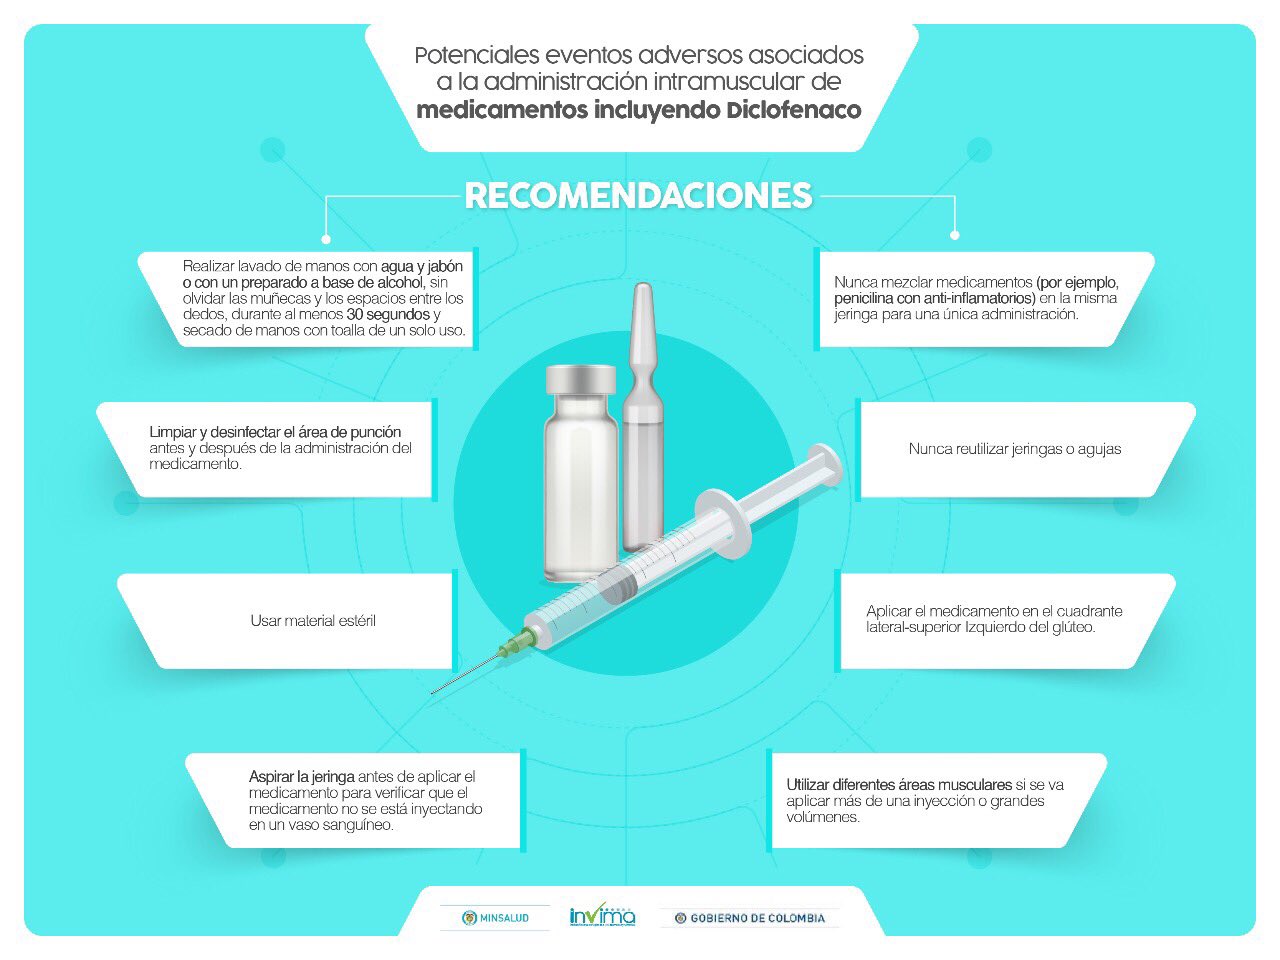 X \ MinSalud Colombia 🇨🇴 على X: "Invima hace recomendaciones de  administración intramuscular de medicamentos inyectados incluyendo  Diclofenaco. https://t.co/O19UXVl3MD"